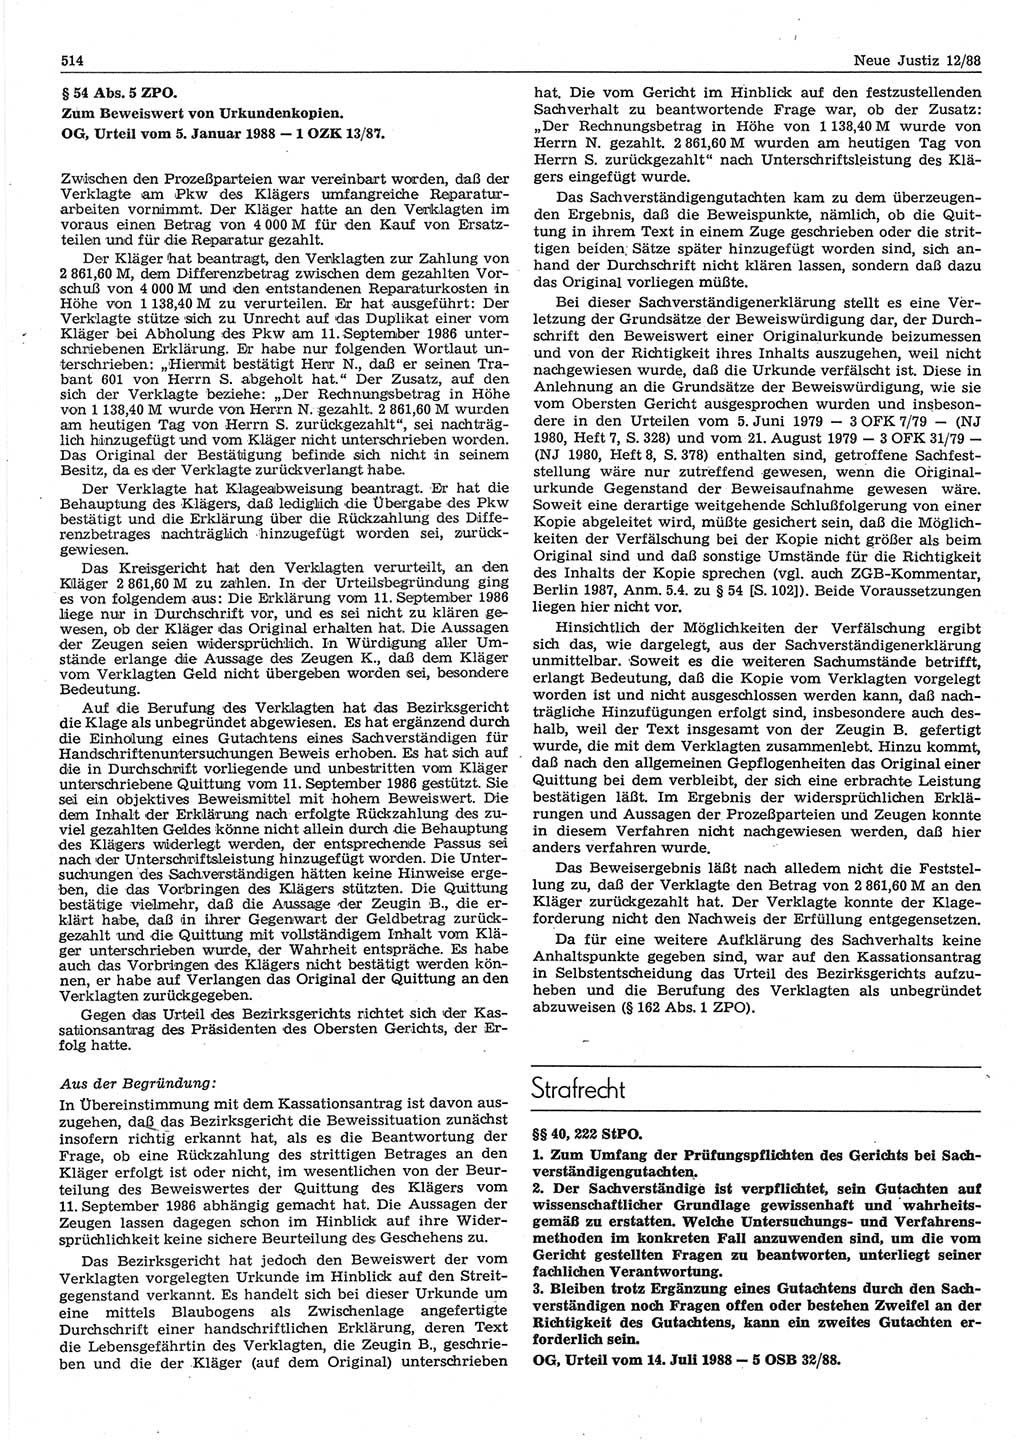 Neue Justiz (NJ), Zeitschrift für sozialistisches Recht und Gesetzlichkeit [Deutsche Demokratische Republik (DDR)], 42. Jahrgang 1988, Seite 514 (NJ DDR 1988, S. 514)